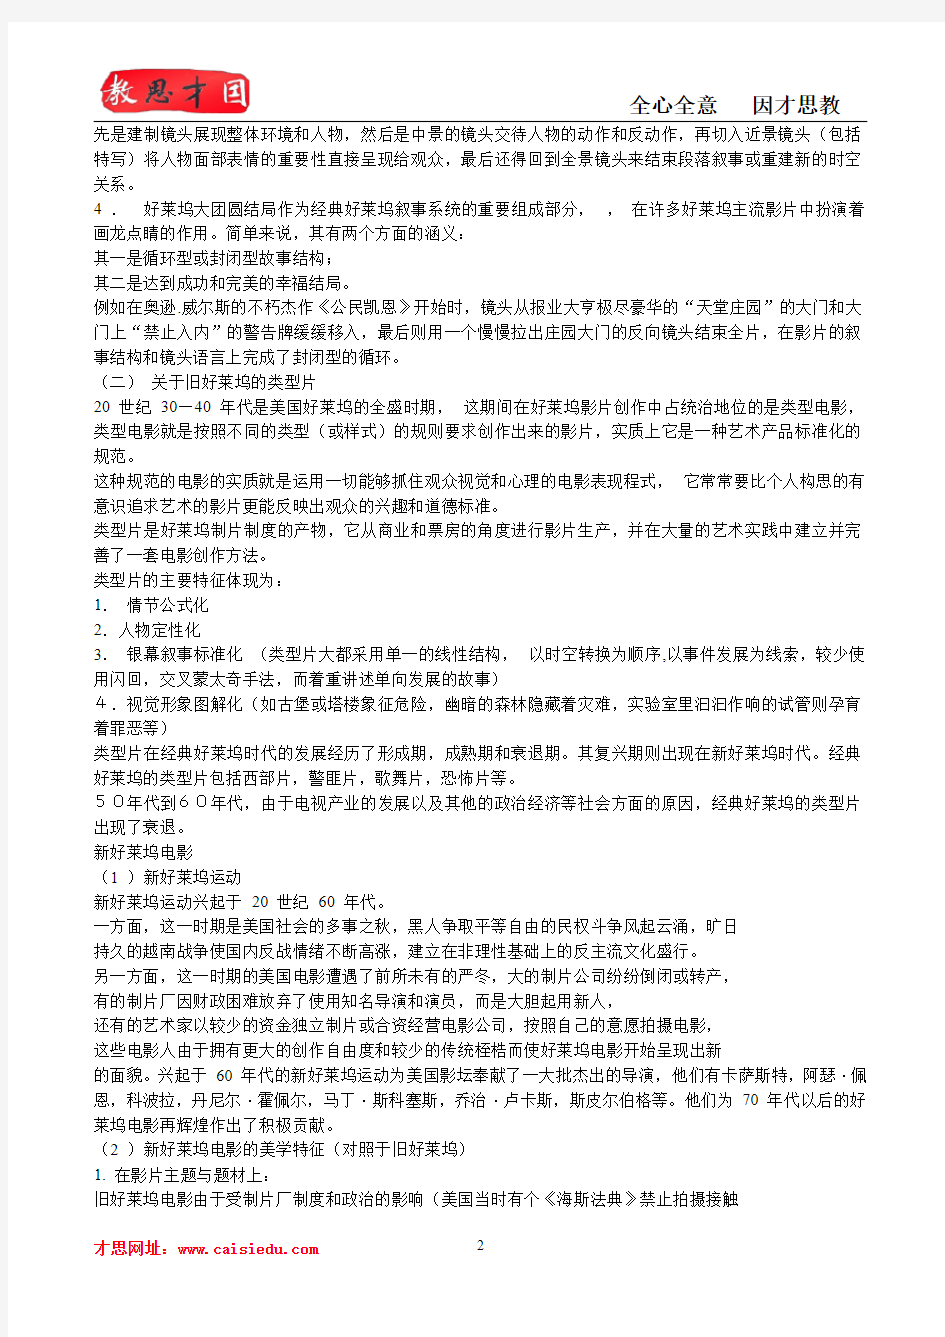 中国电影艺术研究中心电影学考研参考书目,笔记,真题